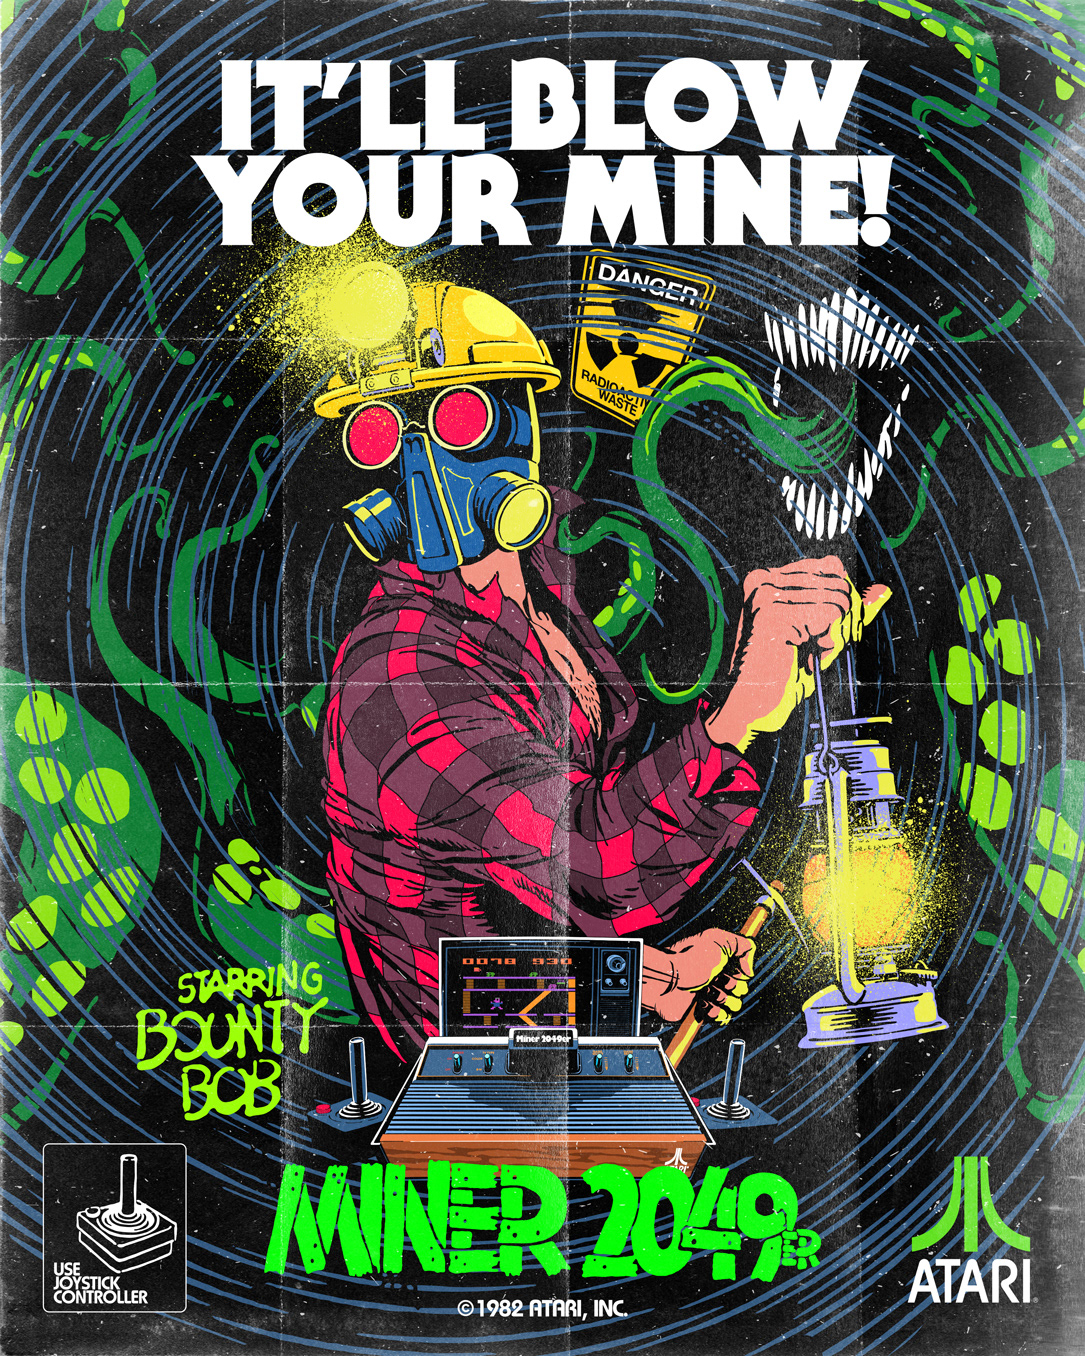 1980's 1980s 80's atari Atari 2600 Gaming Magazine Ad Poster Design Retro vintage